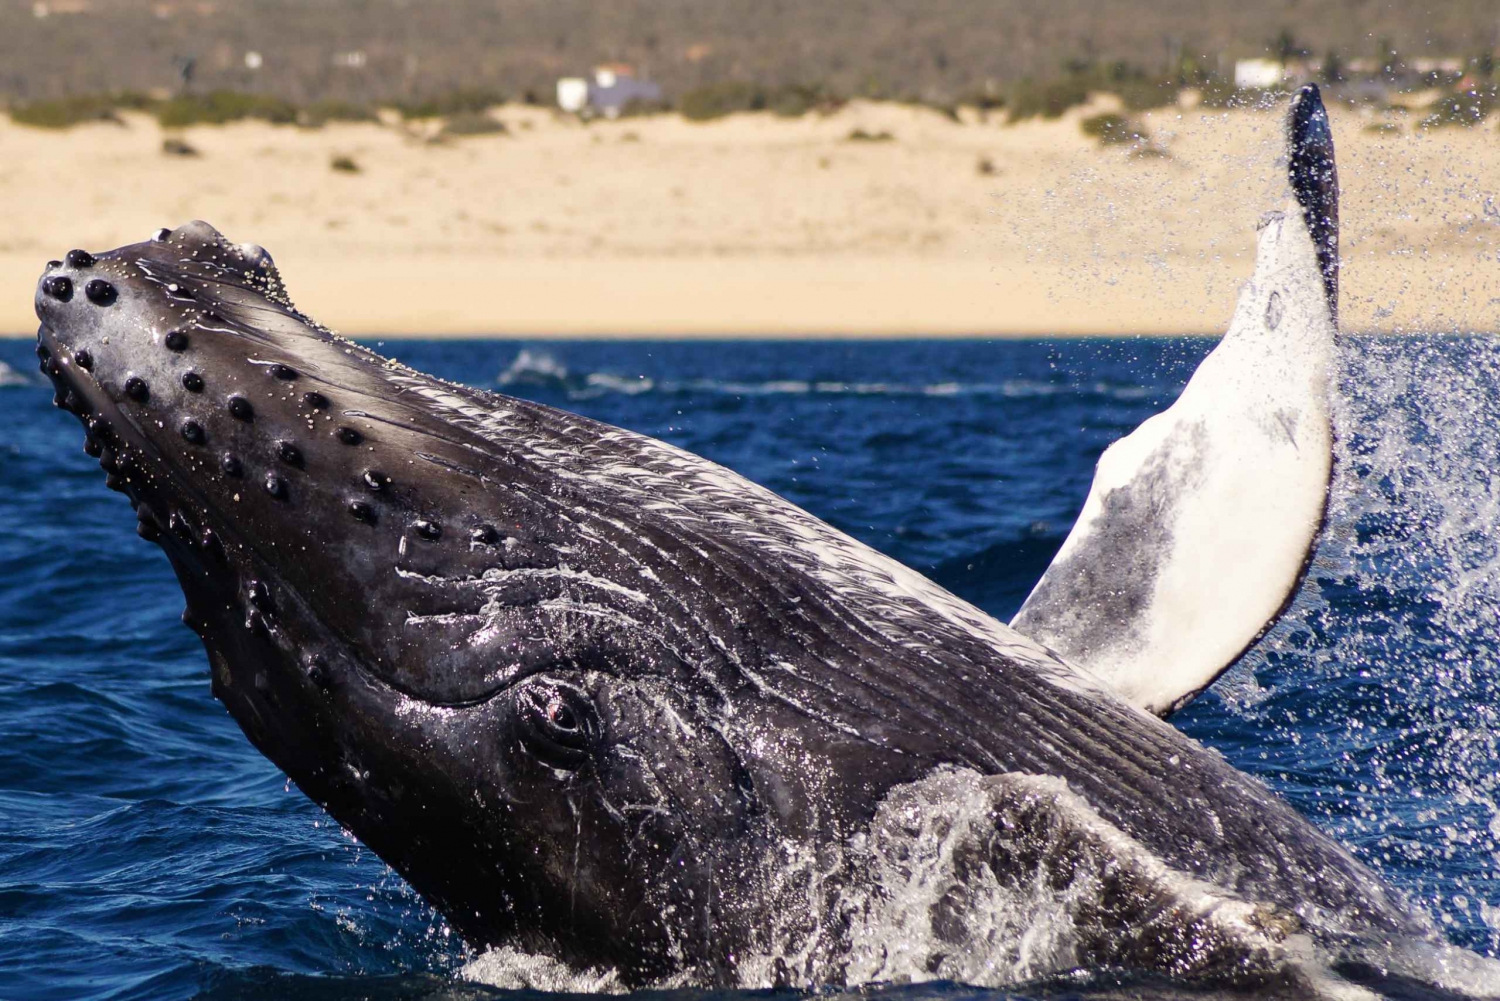 Cabo San Lucas: Excursión de 2,5 horas para avistar ballenas